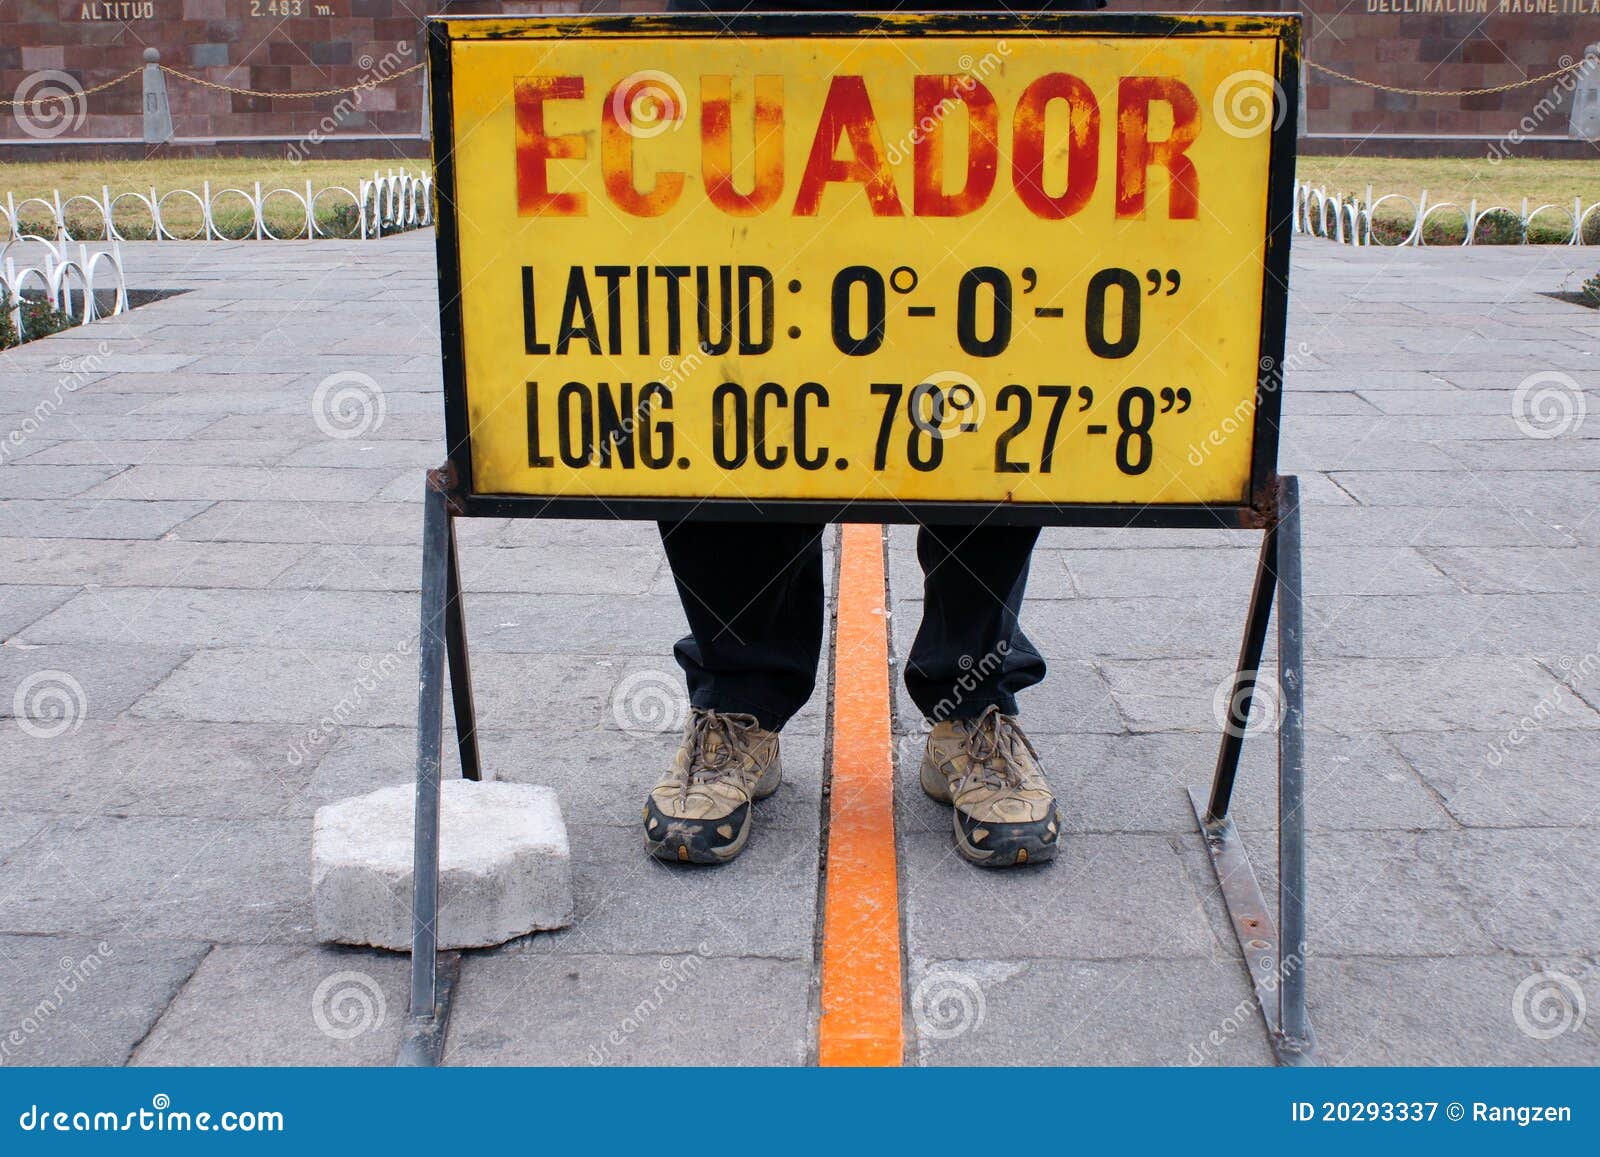 equator-line